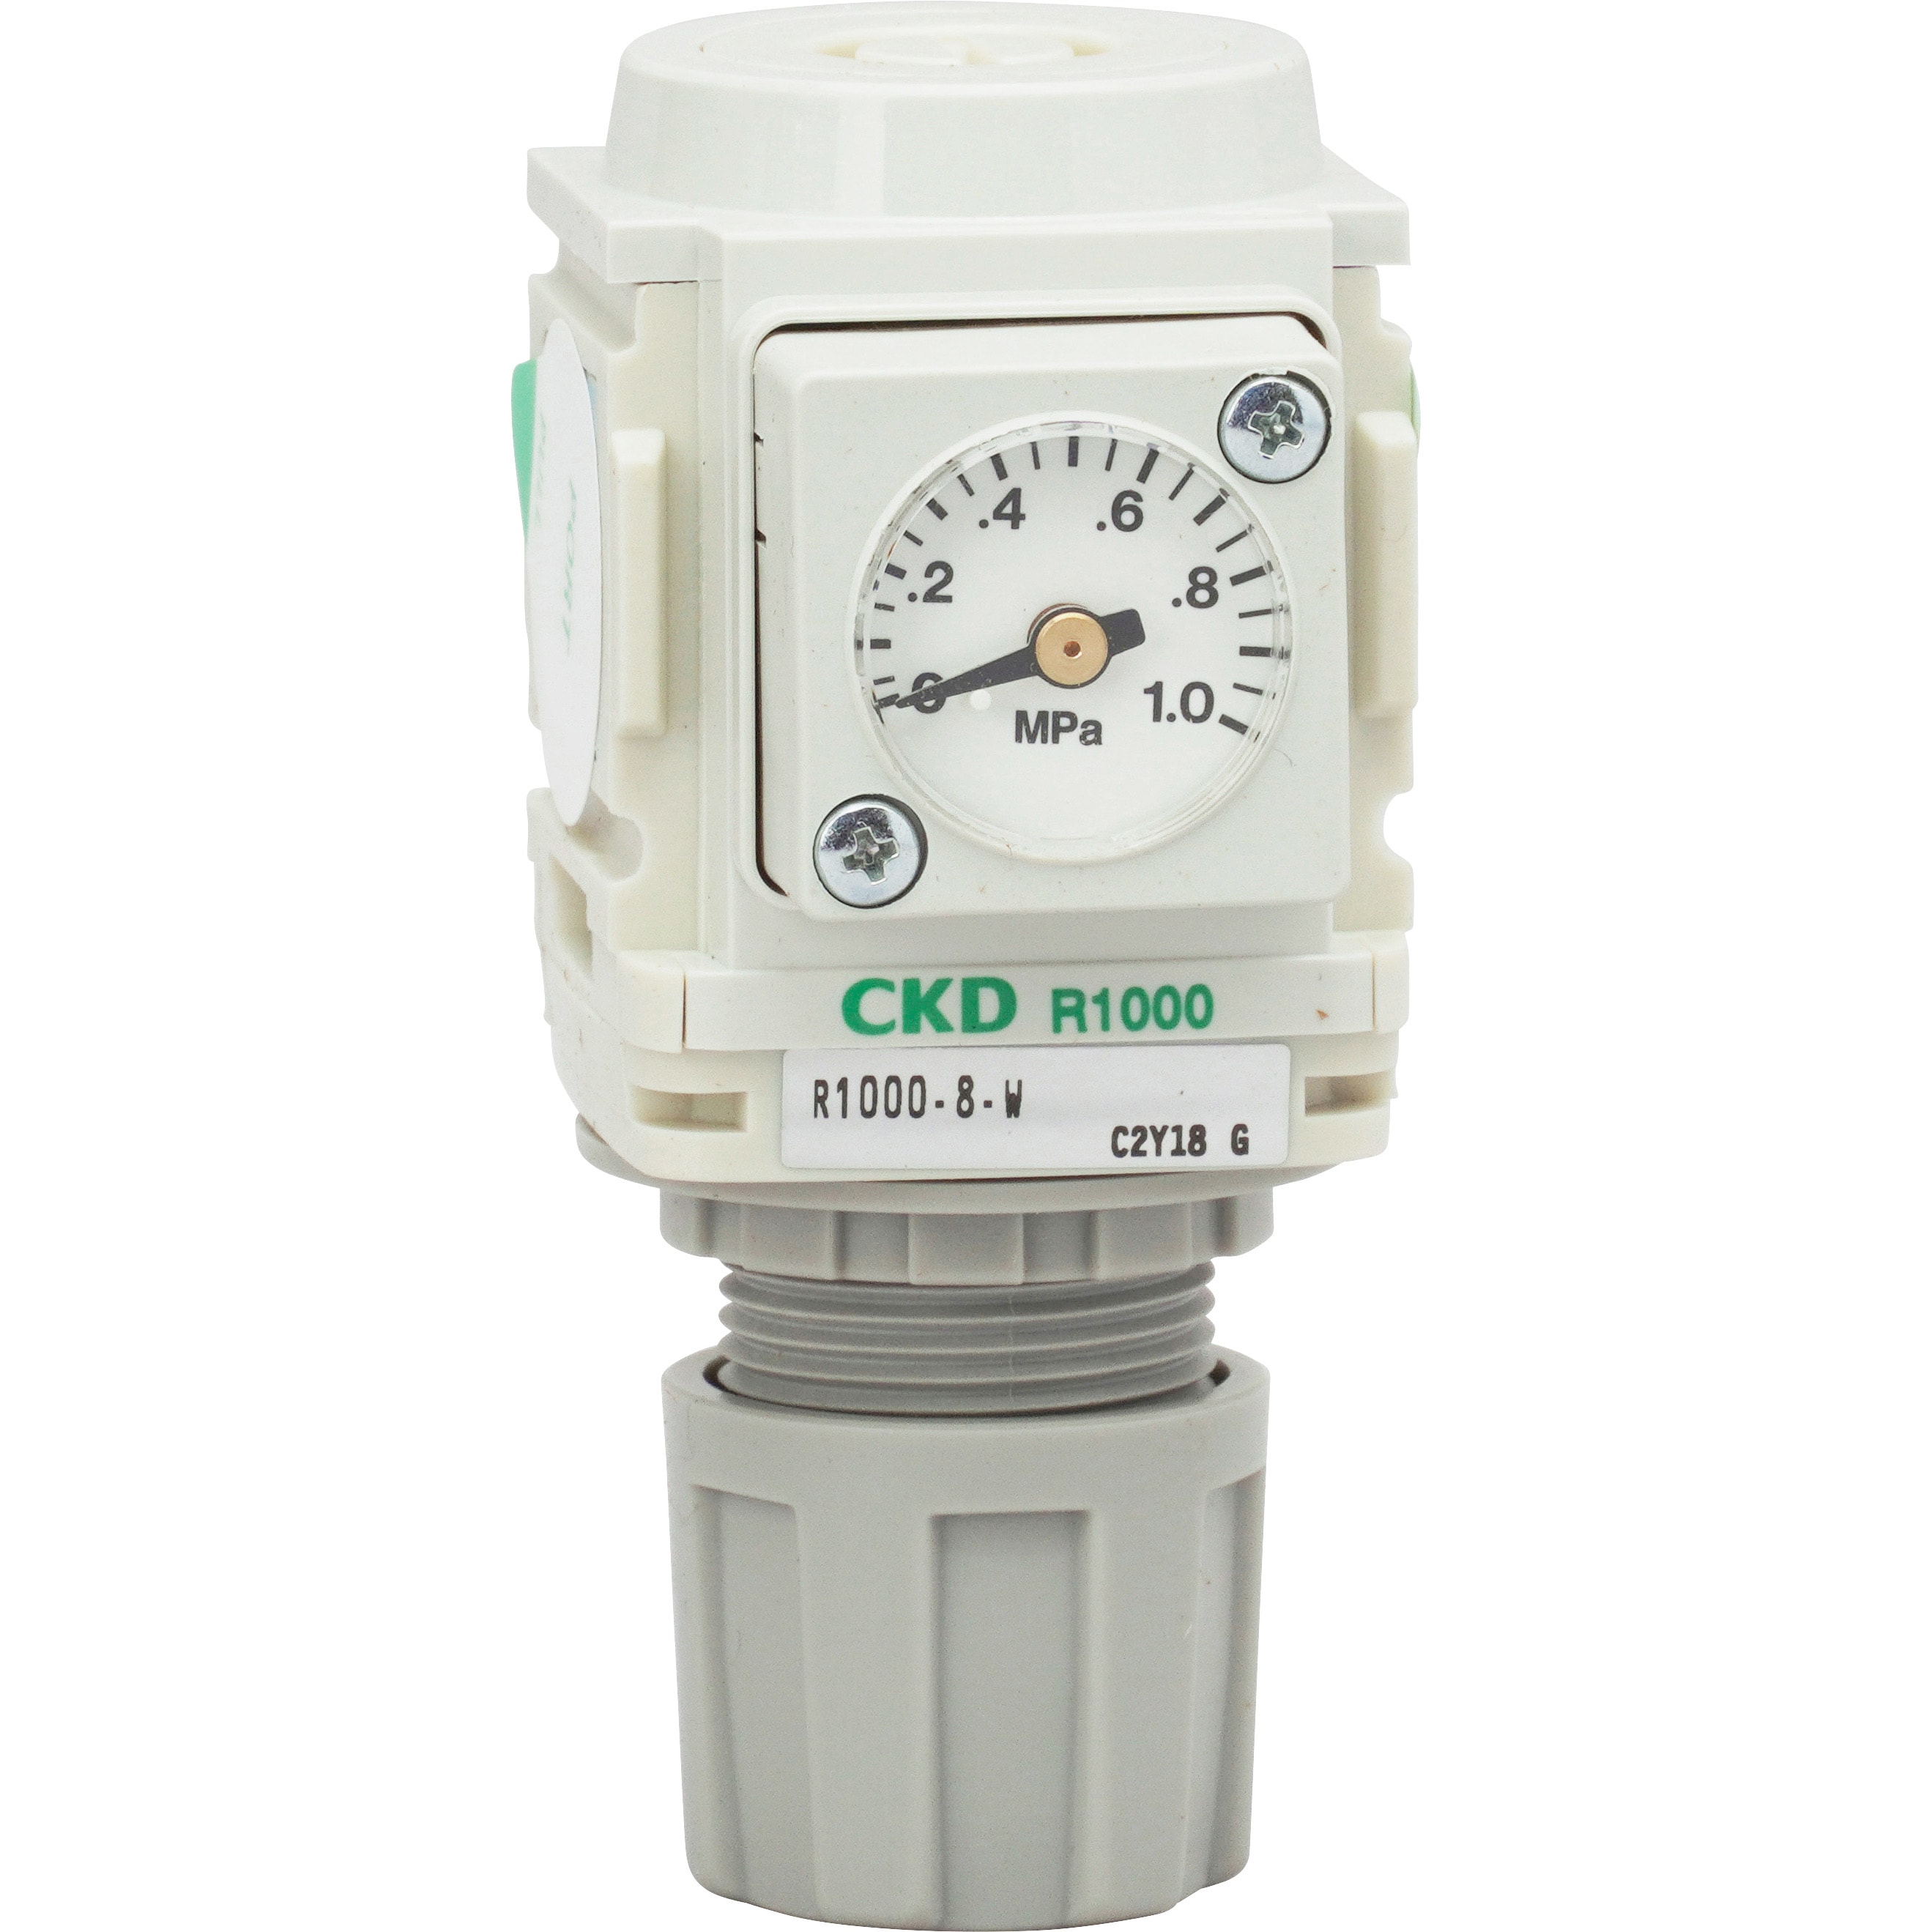 CKD CKD レギュレータ 白色シリーズ R1000-6-W-R1